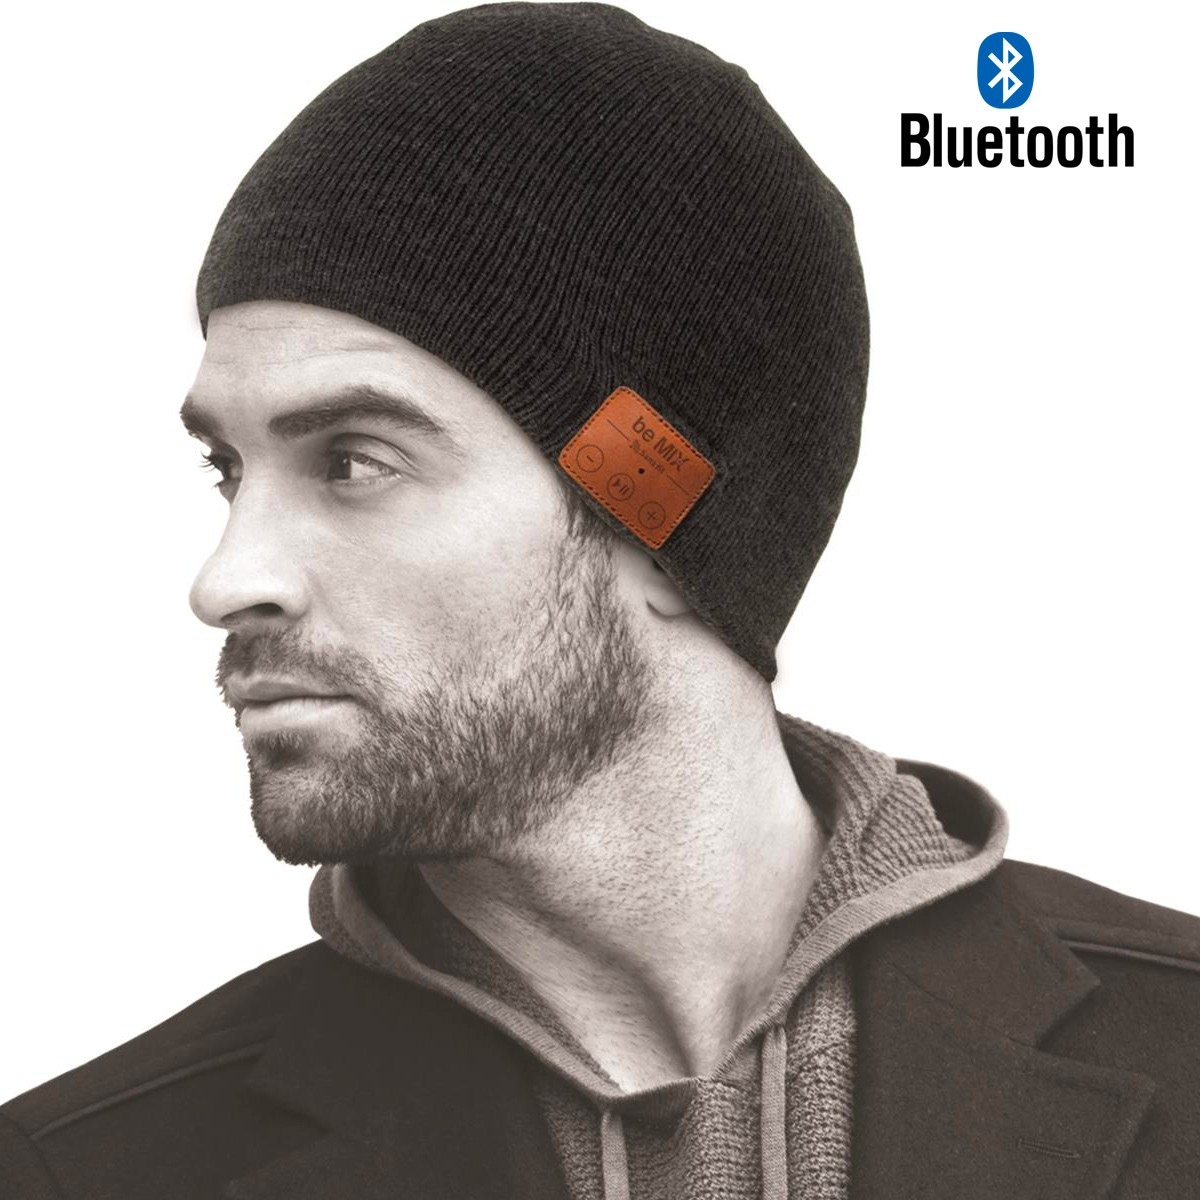 gadget high-tech : Bonnet bluetooth - 16,84 €